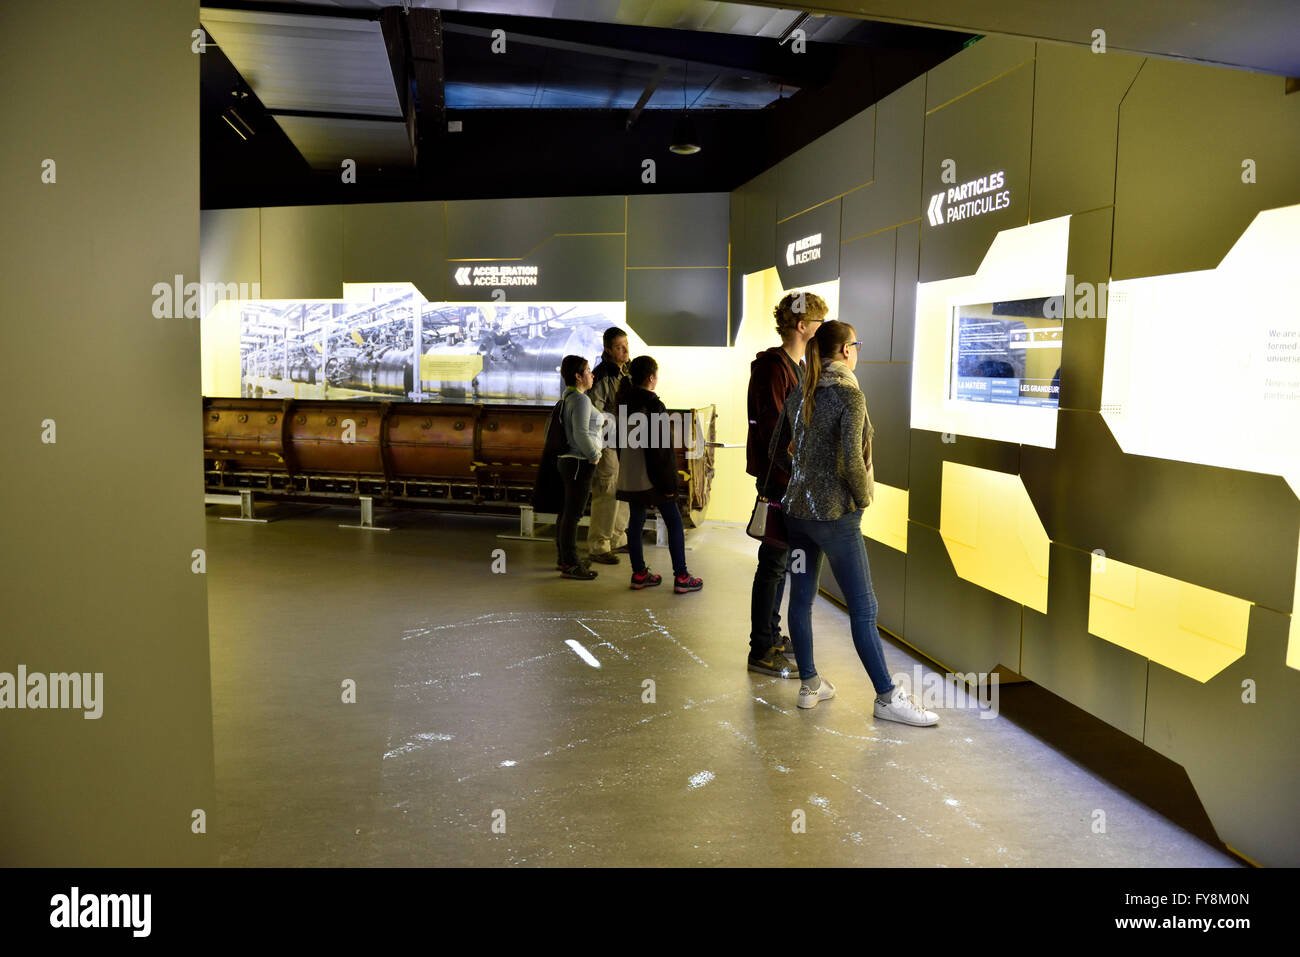 Il CERN, l'Organizzazione europea per la ricerca nucleare, edificio che ospita la reception microcosmo area espositiva Foto Stock